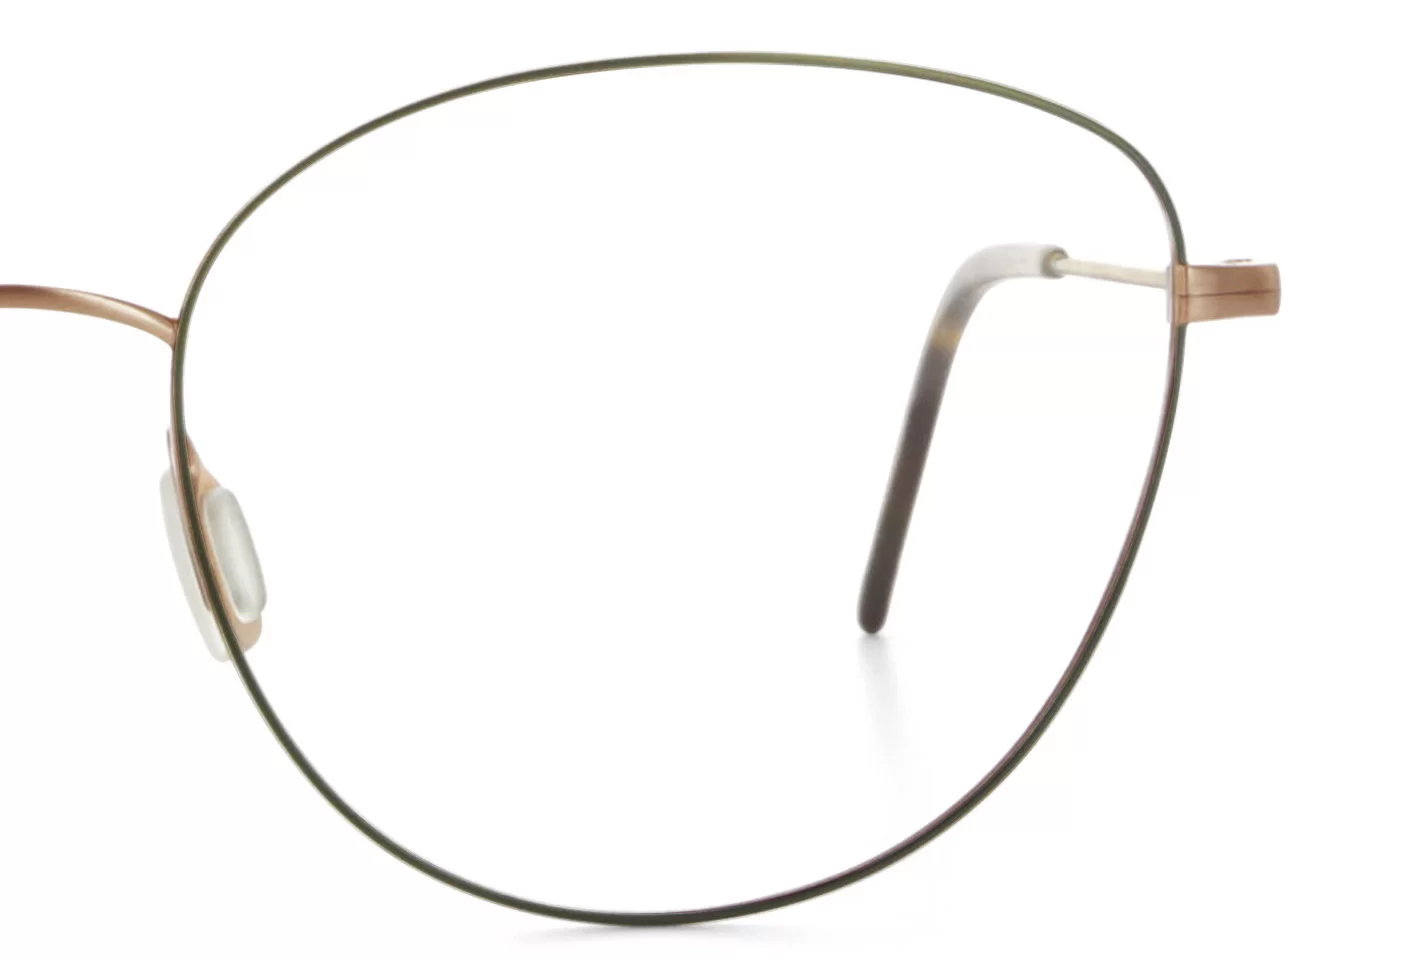 Brillenmarke Munic Eyewear - Extreme Nahaufnahme einer Brille rechte Seite